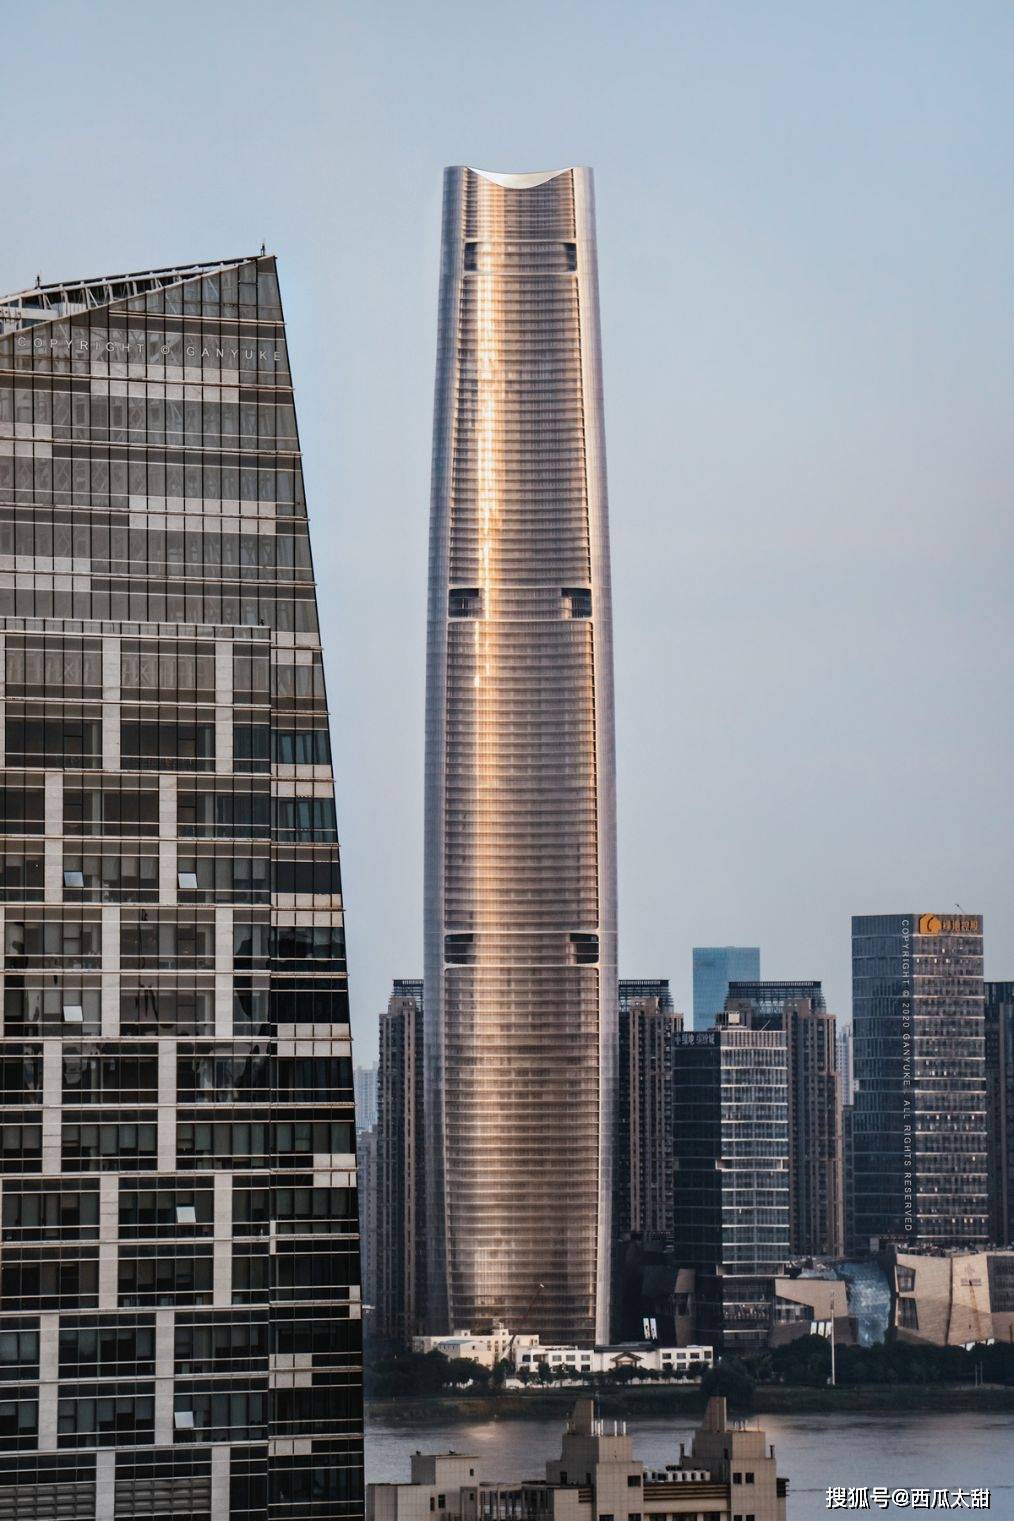 原设计高度636米,建成后将超过上海中心大厦,跻身中国